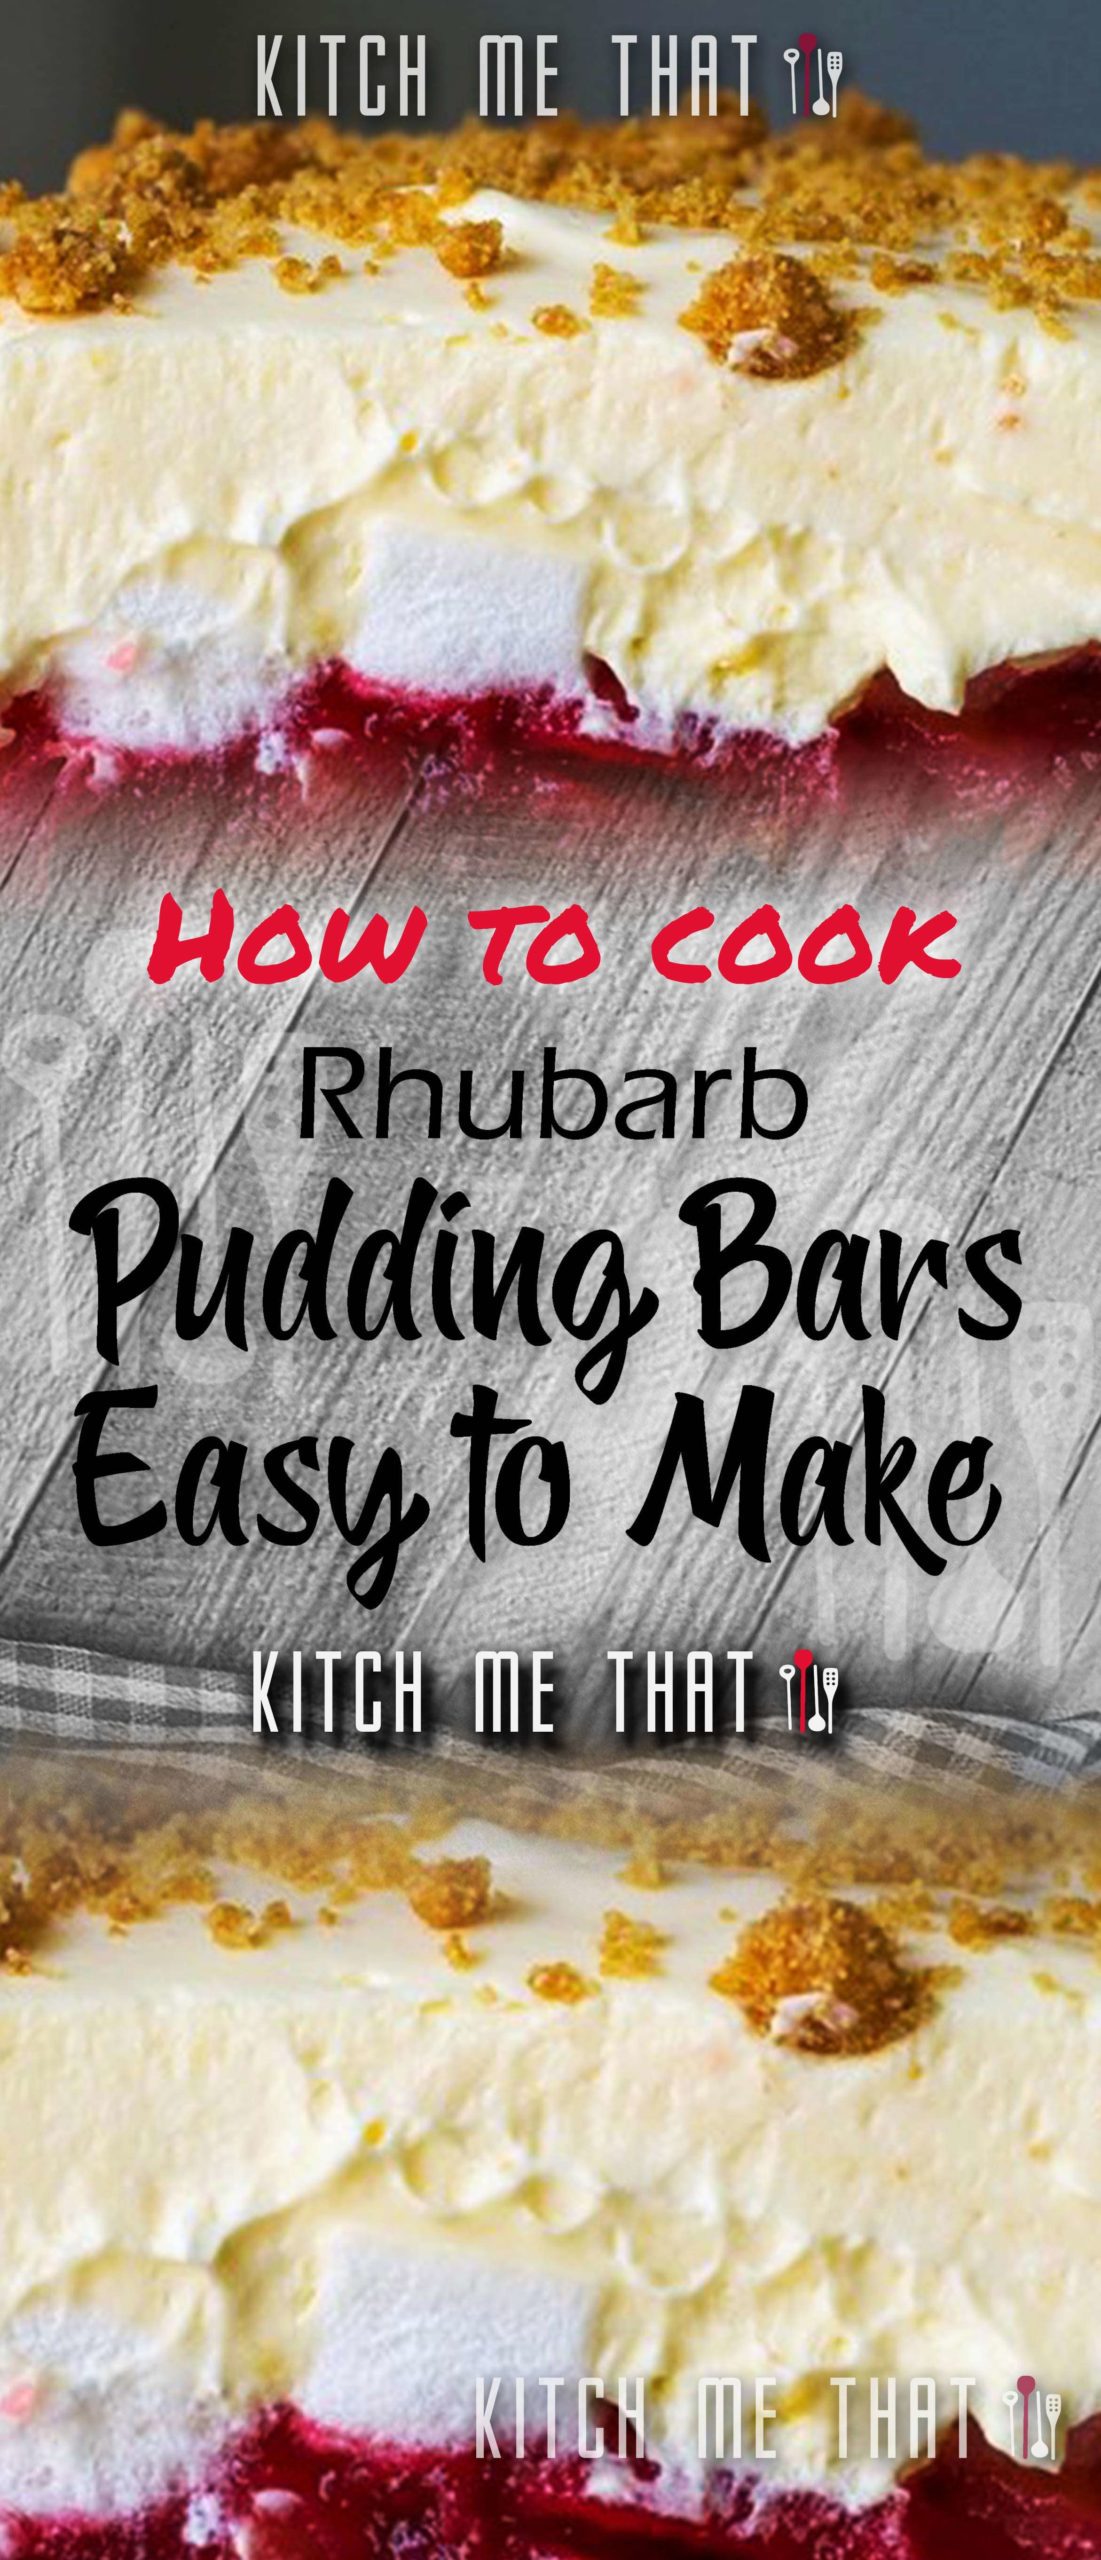 Rhubarb Pudding Bars